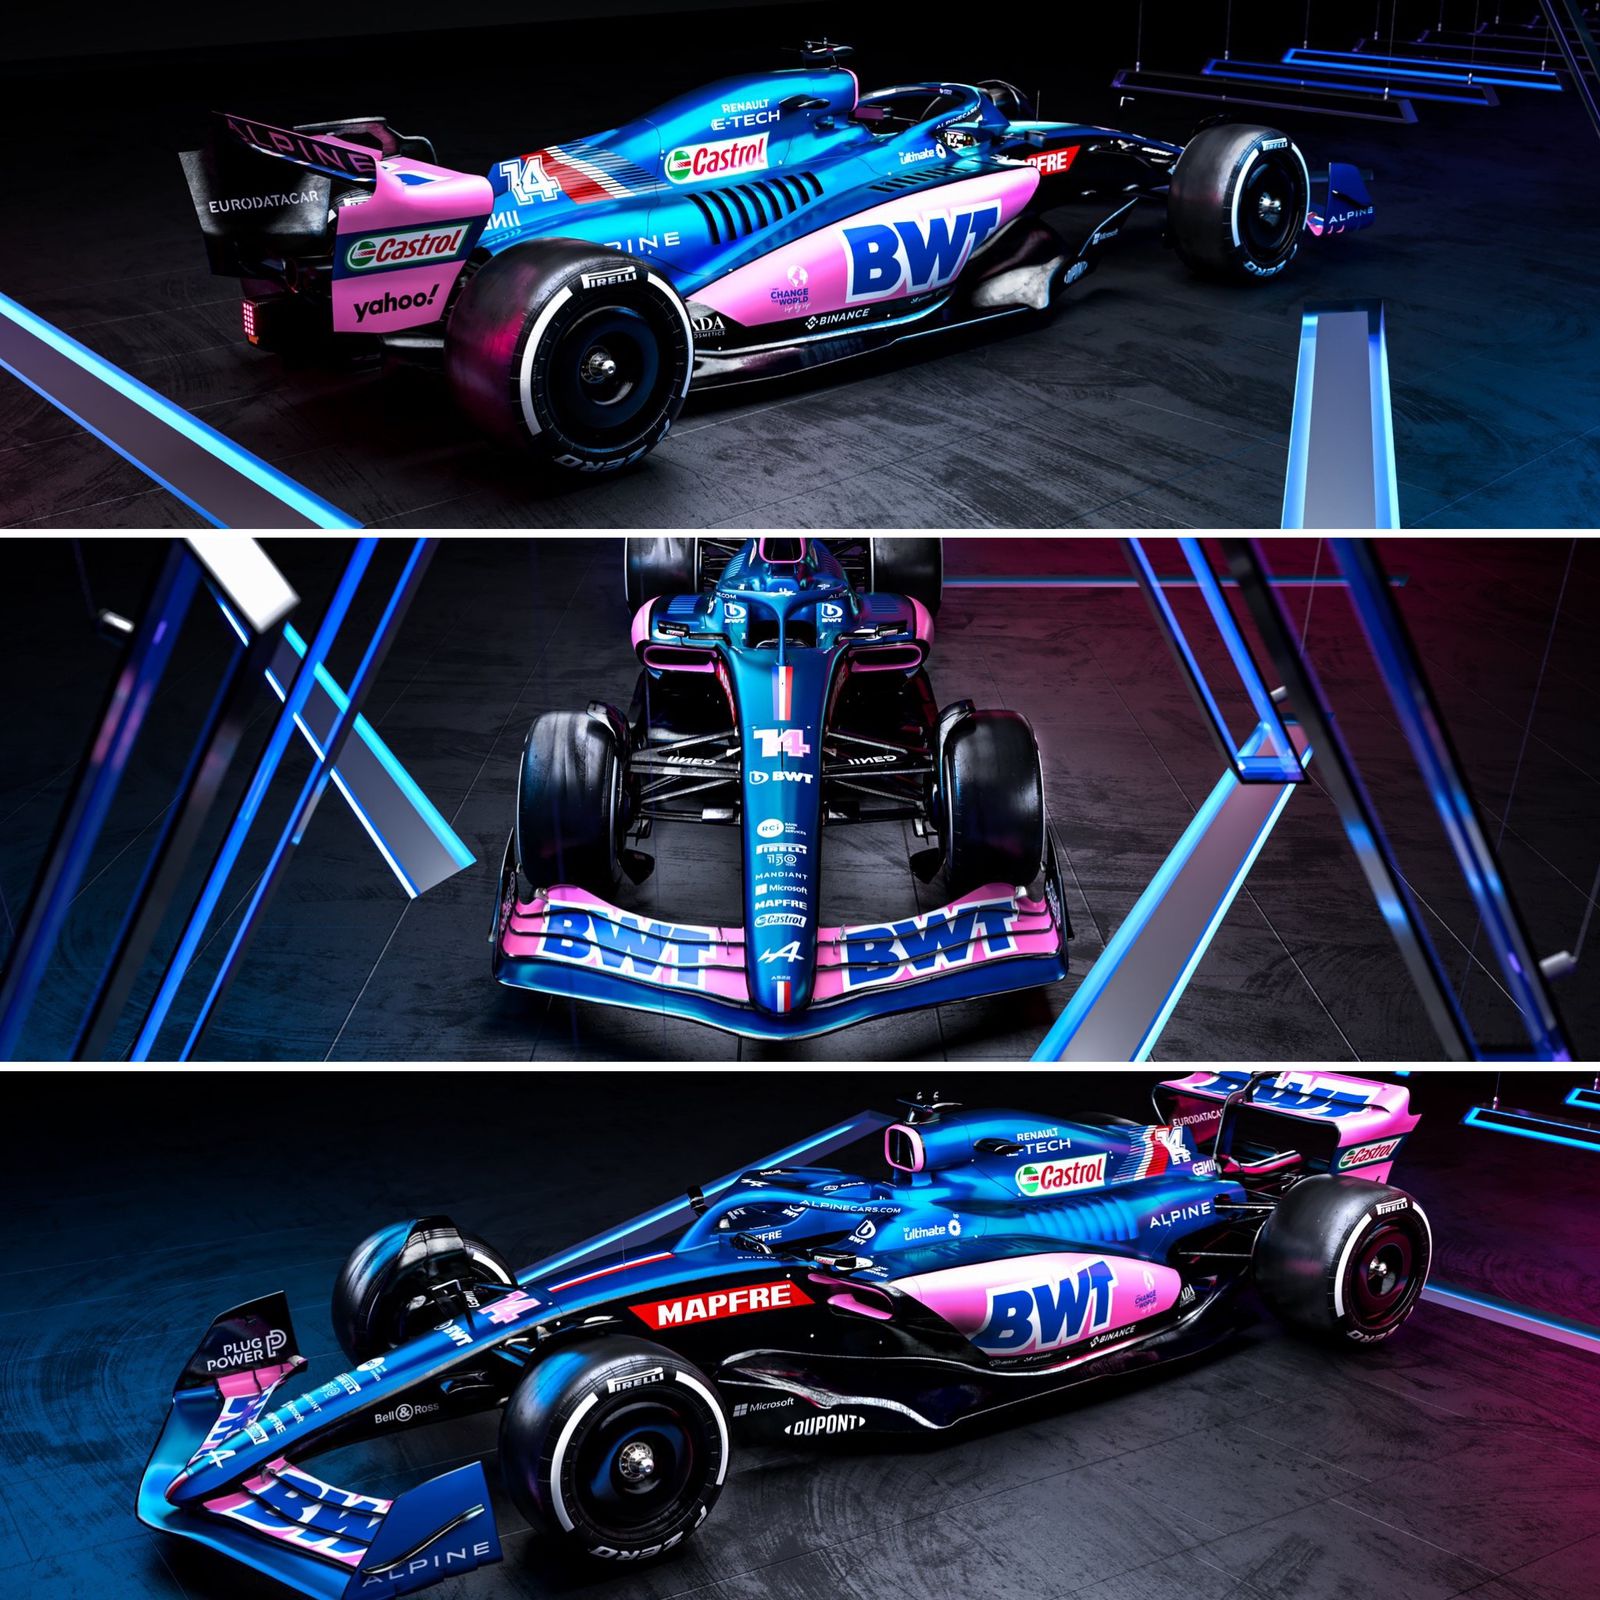 ¡Hermosos! Pásale a ver todos los autos para la temporada 2022 de Fórmula 1